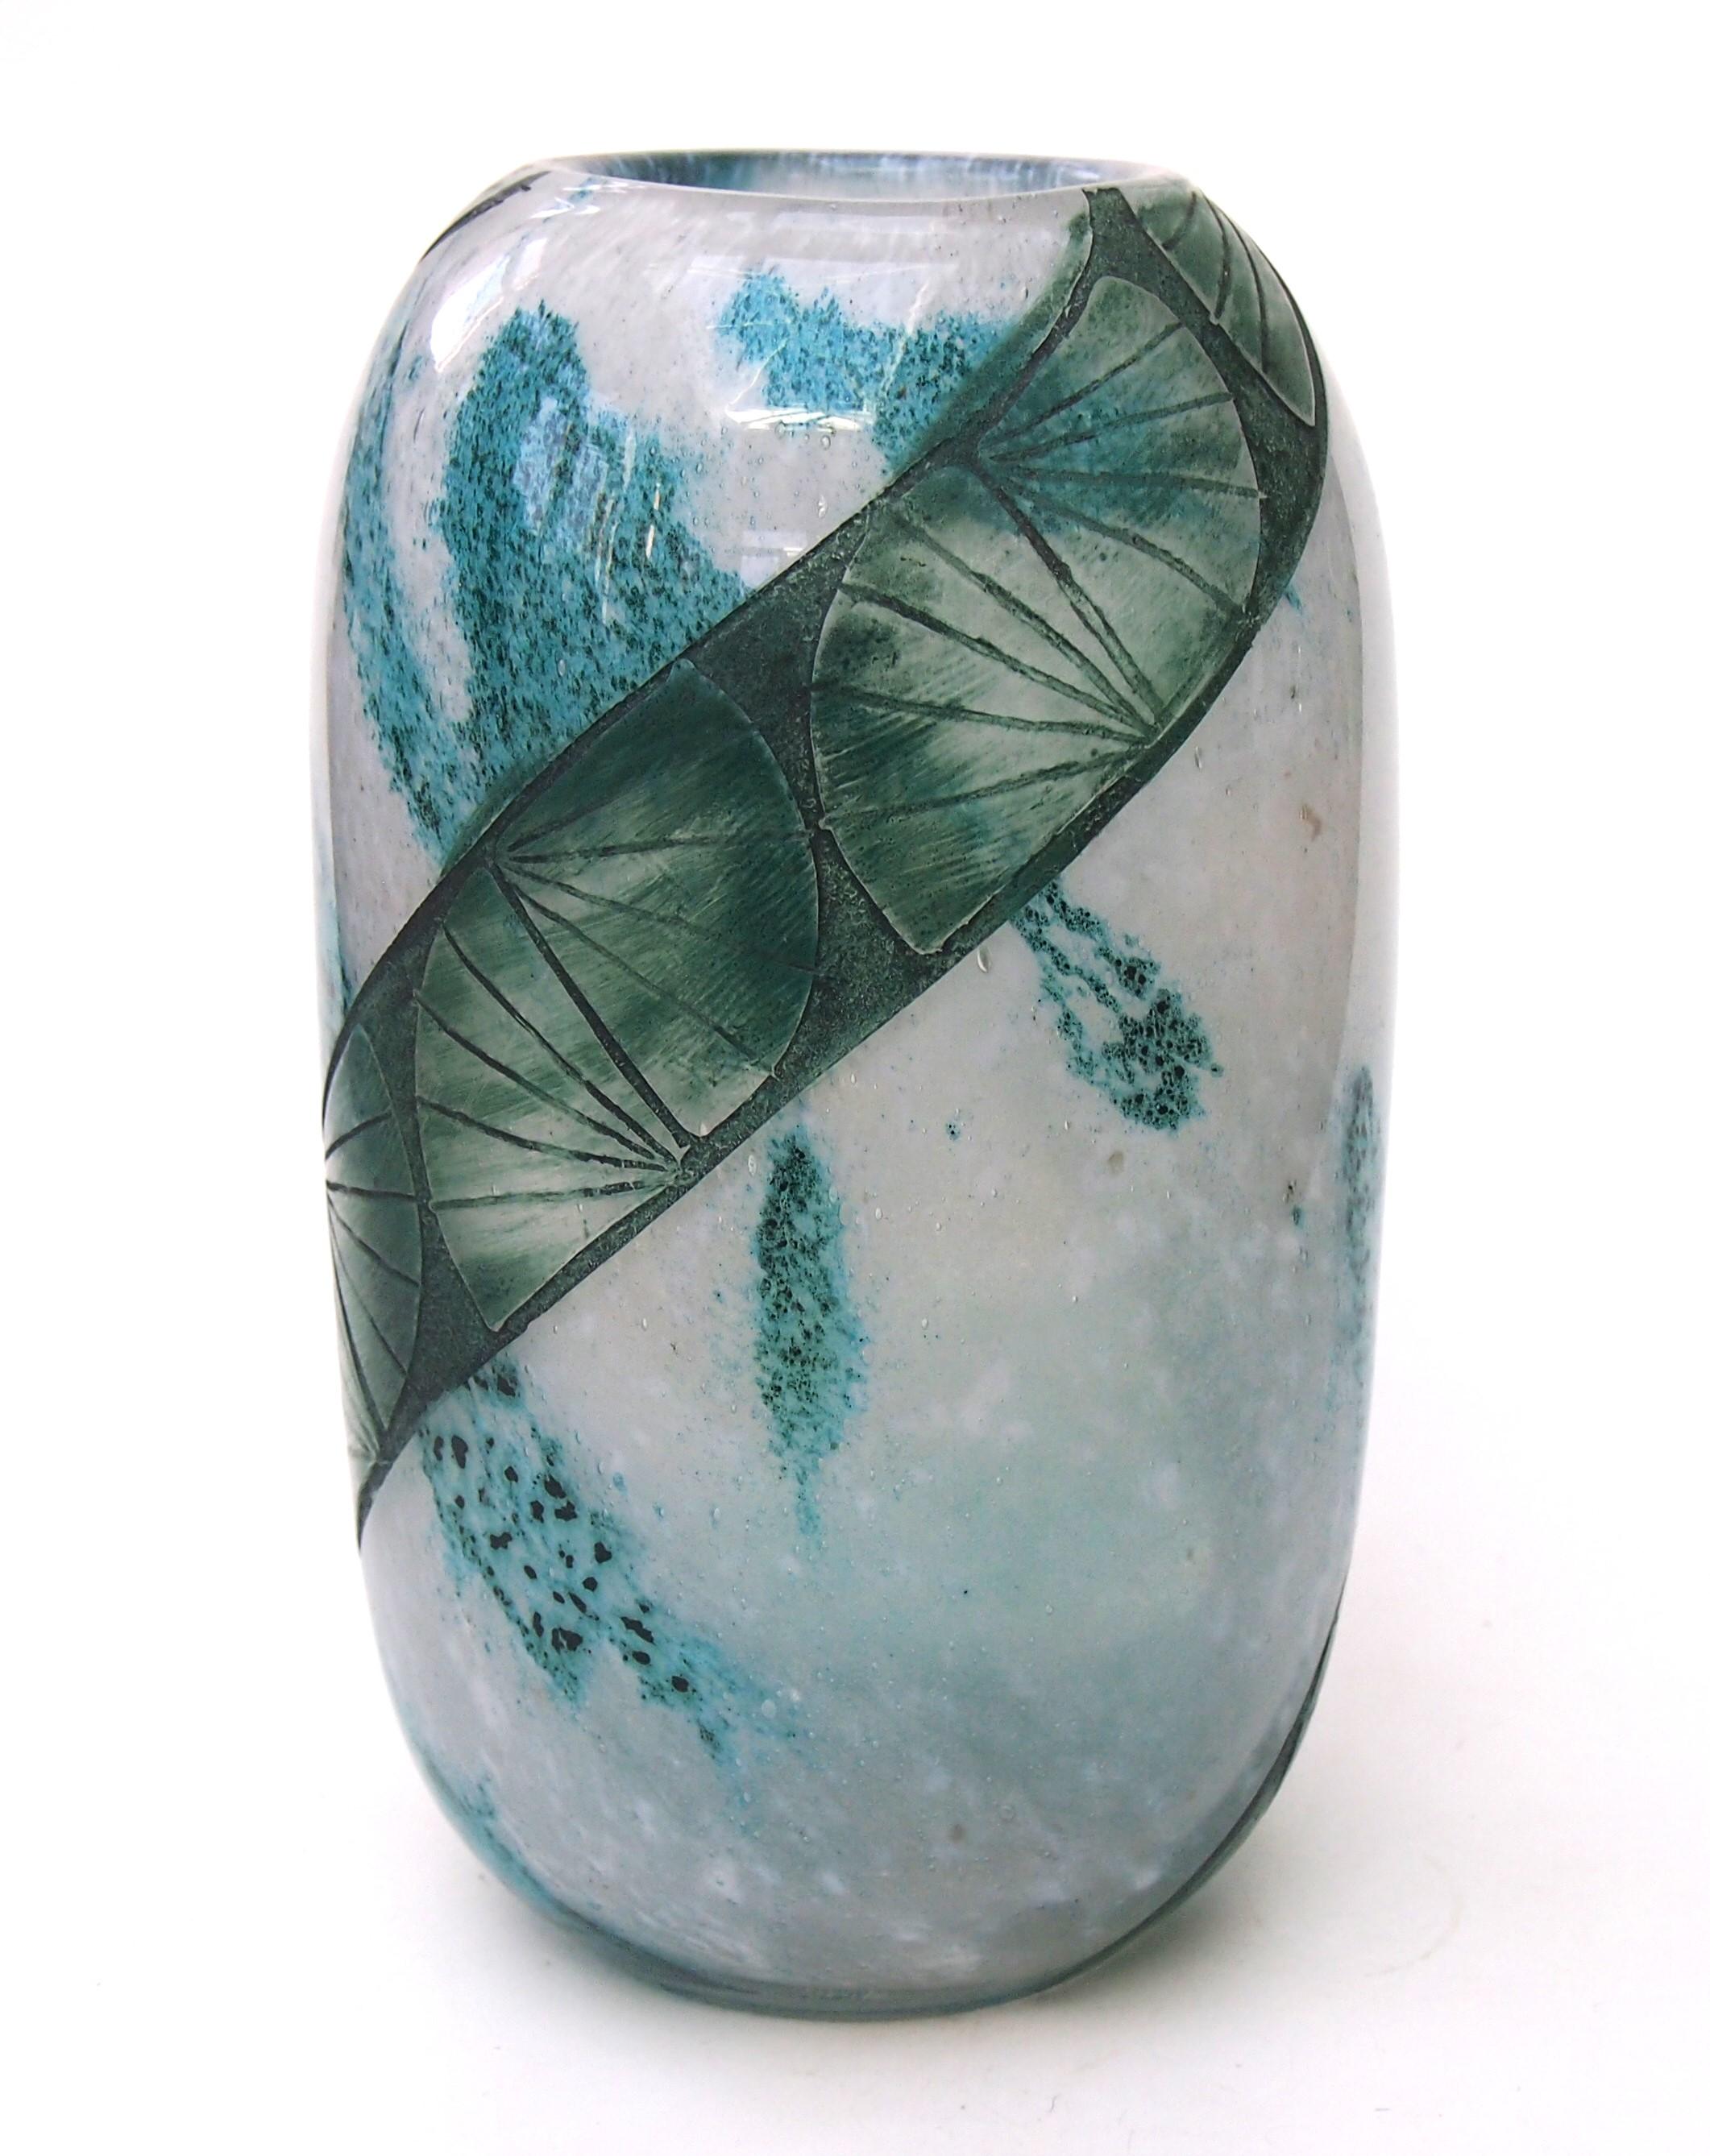 Un fabuleux vase en camée Legras signé Art Déco. Vase cylindrique en forme de balle, avec un haut et un bas arrondis, dans une gamme de verts bleus. Il est fait d'un verre fortement marbré qui a ensuite été taillé en camée.  avec des formes